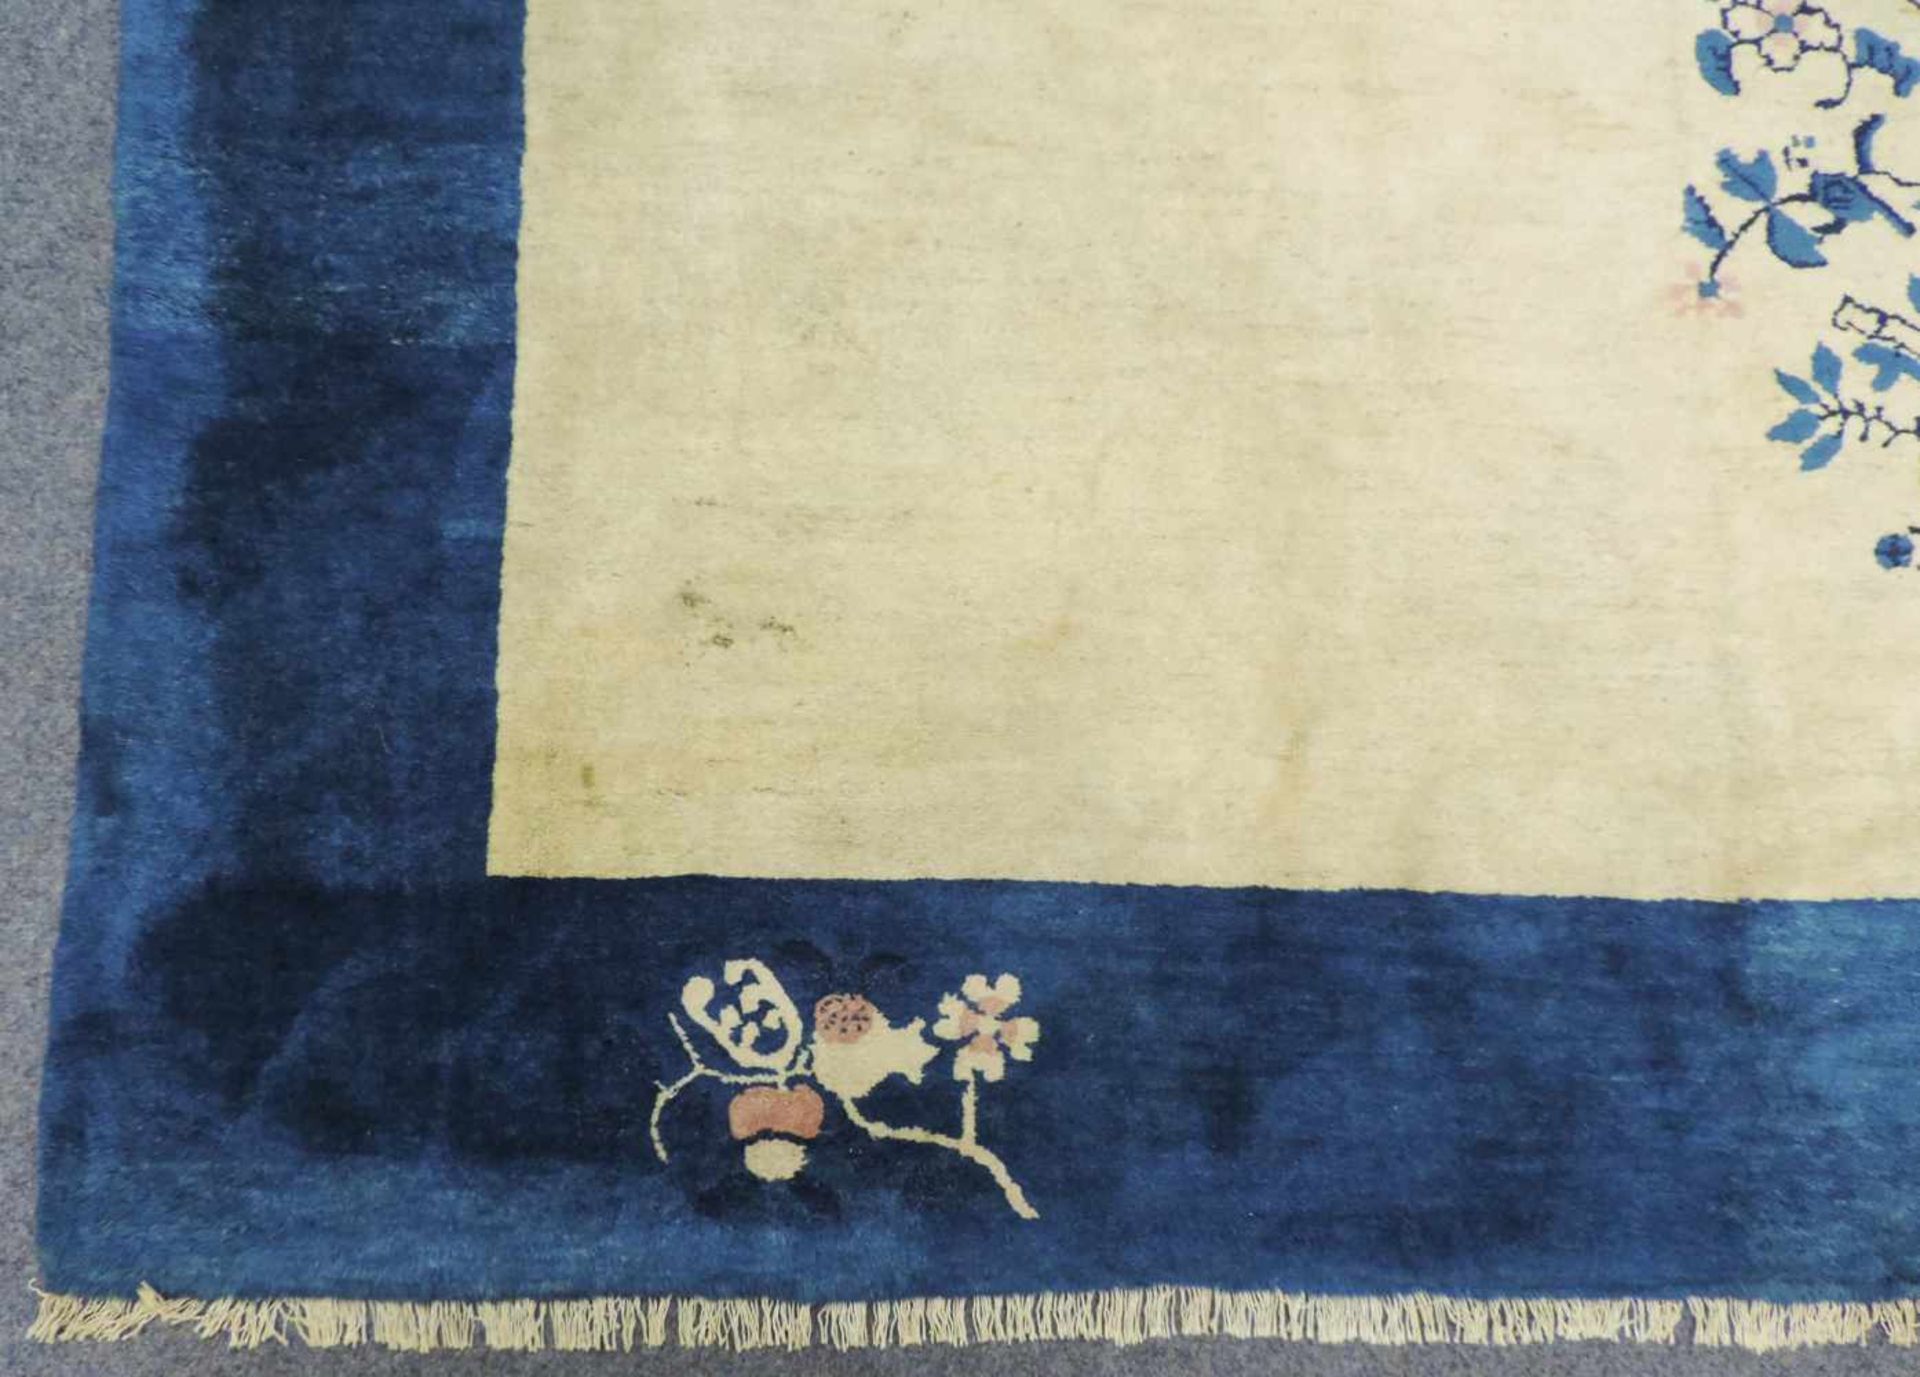 Peking Teppich. China. Alt, um 1900 - 1920.360 cm x 277 cm. Handgeknüpft. Wolle auf Baumwolle. - Bild 3 aus 10